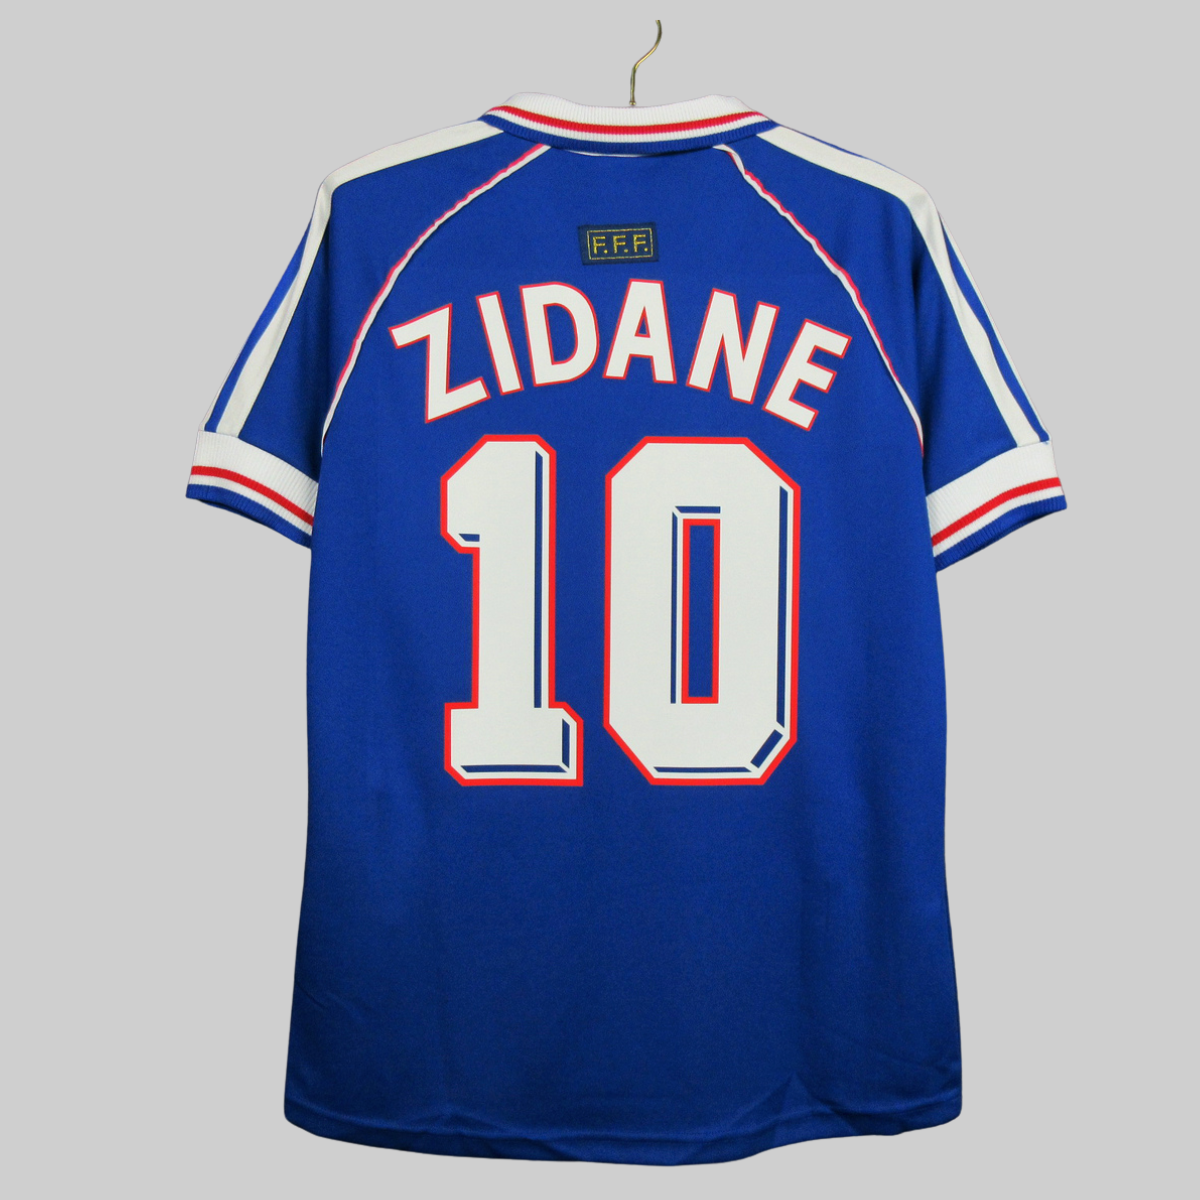 zidane 10 shirt